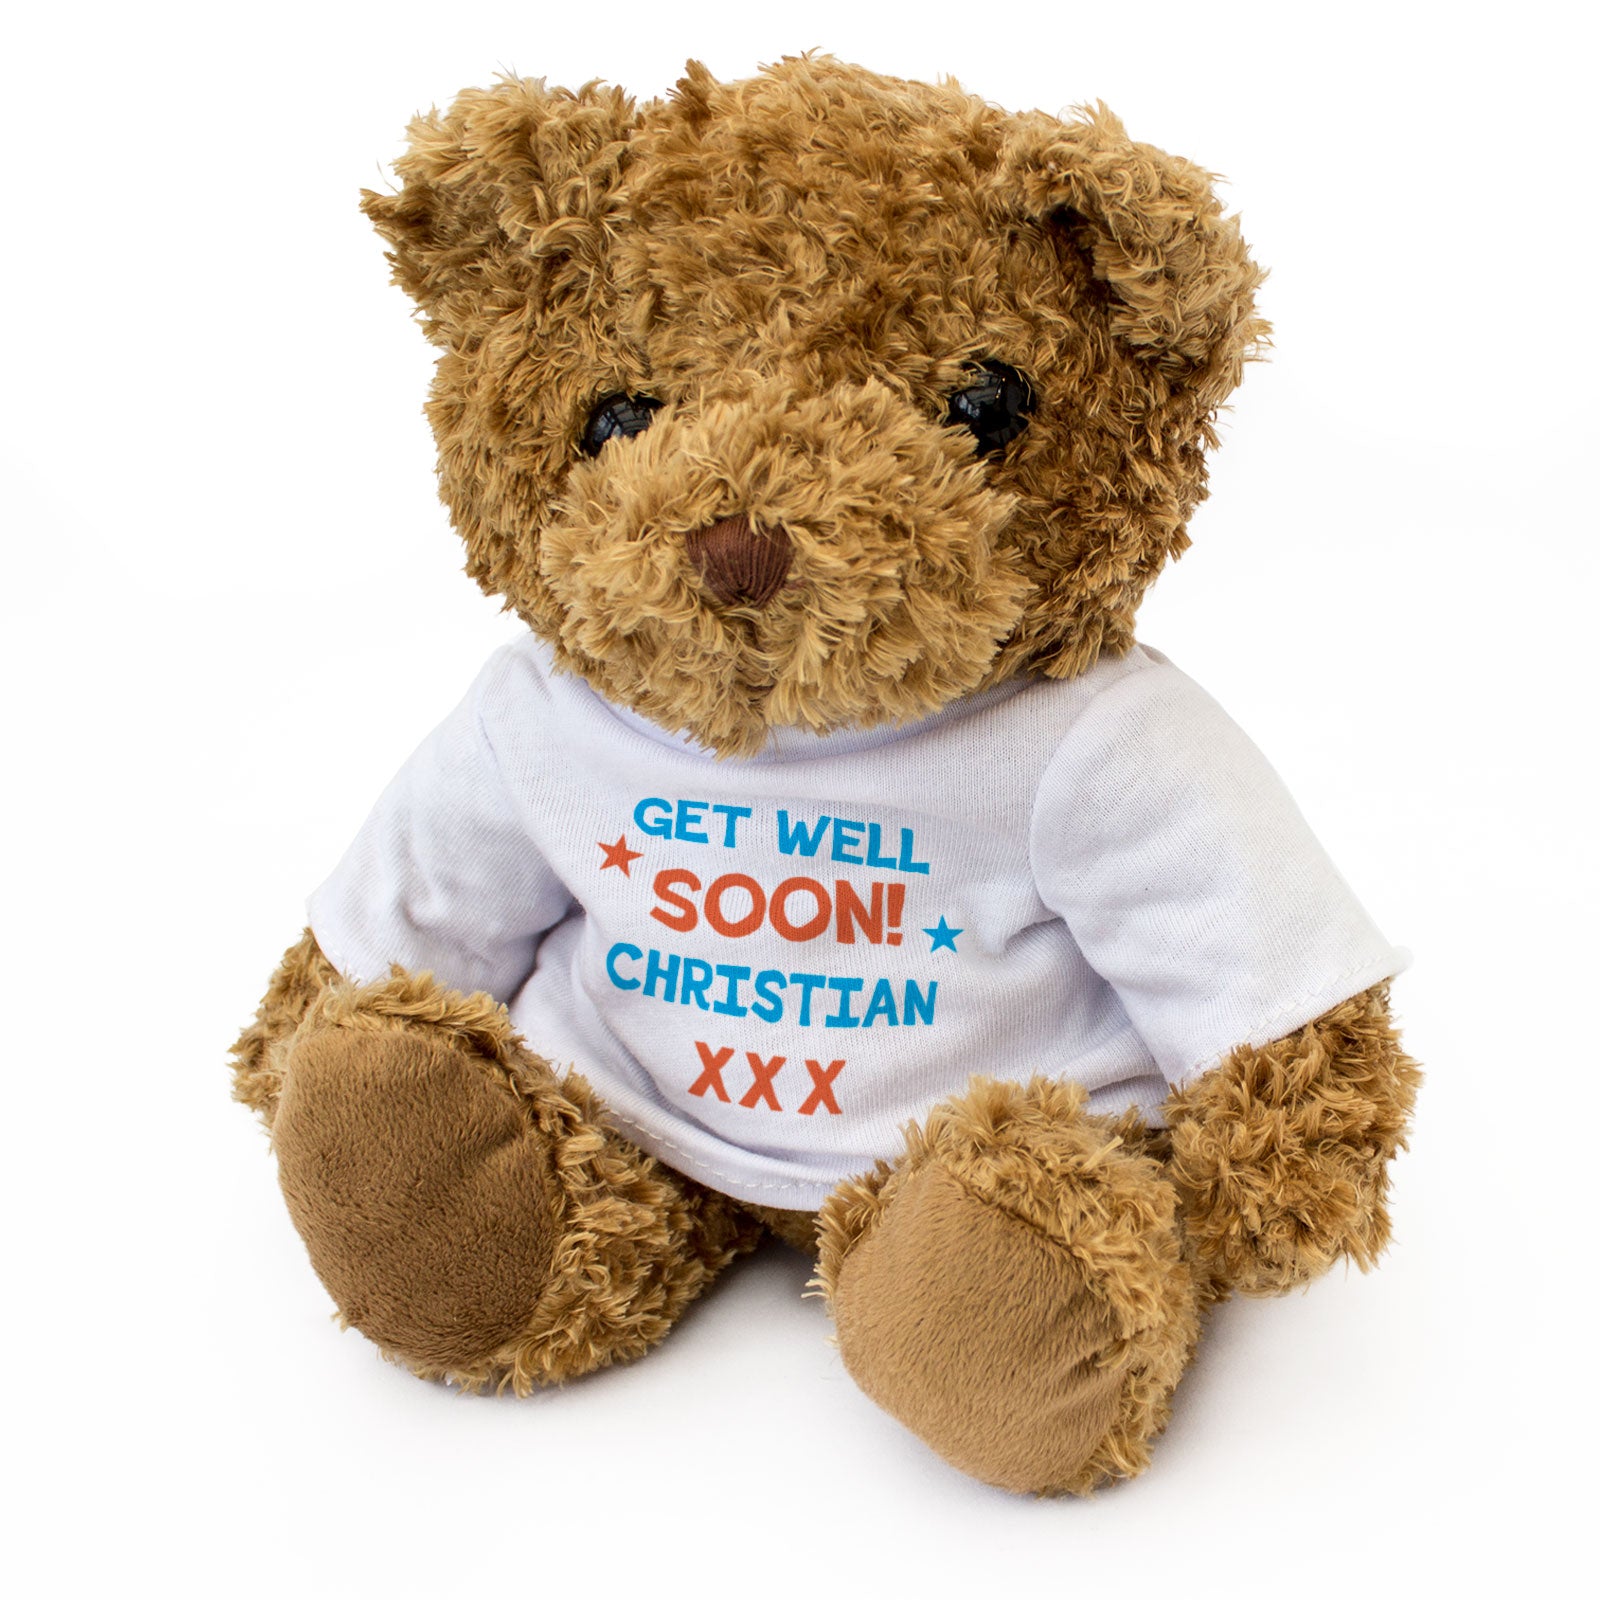 Get Well Soon Christian - Teddy Bear